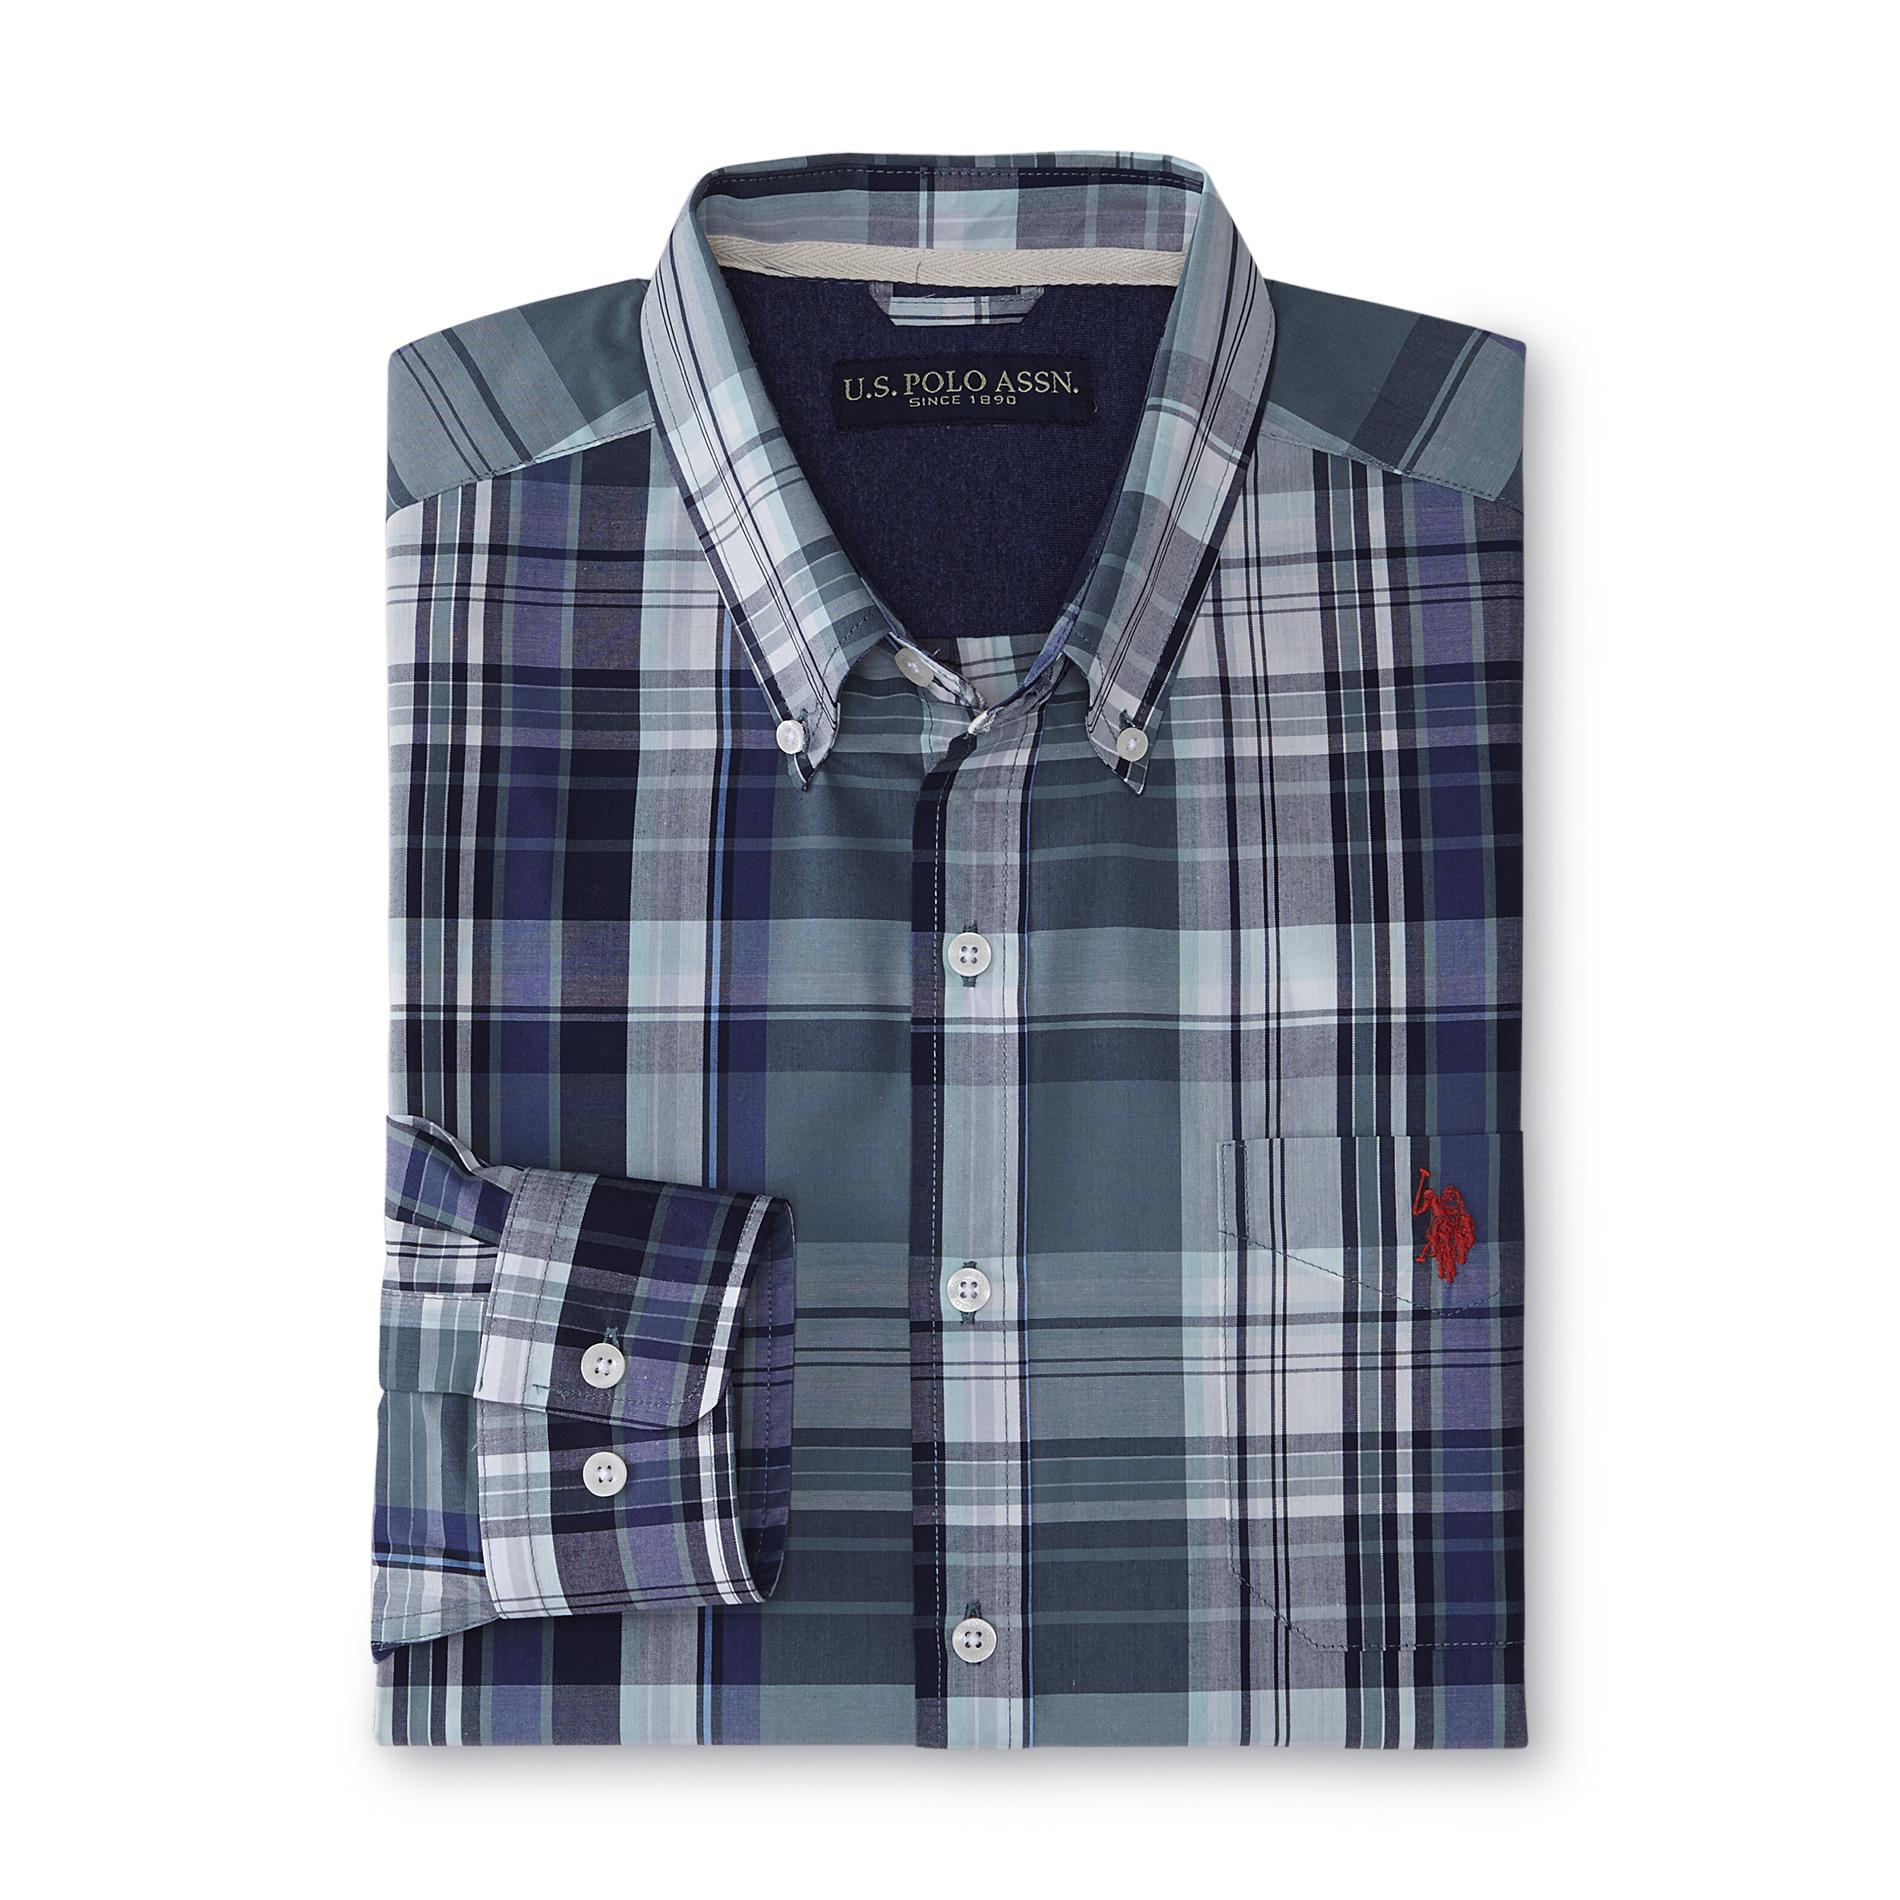 U.S. Polo Assn. Men's Button-Front Shirt - Plaid